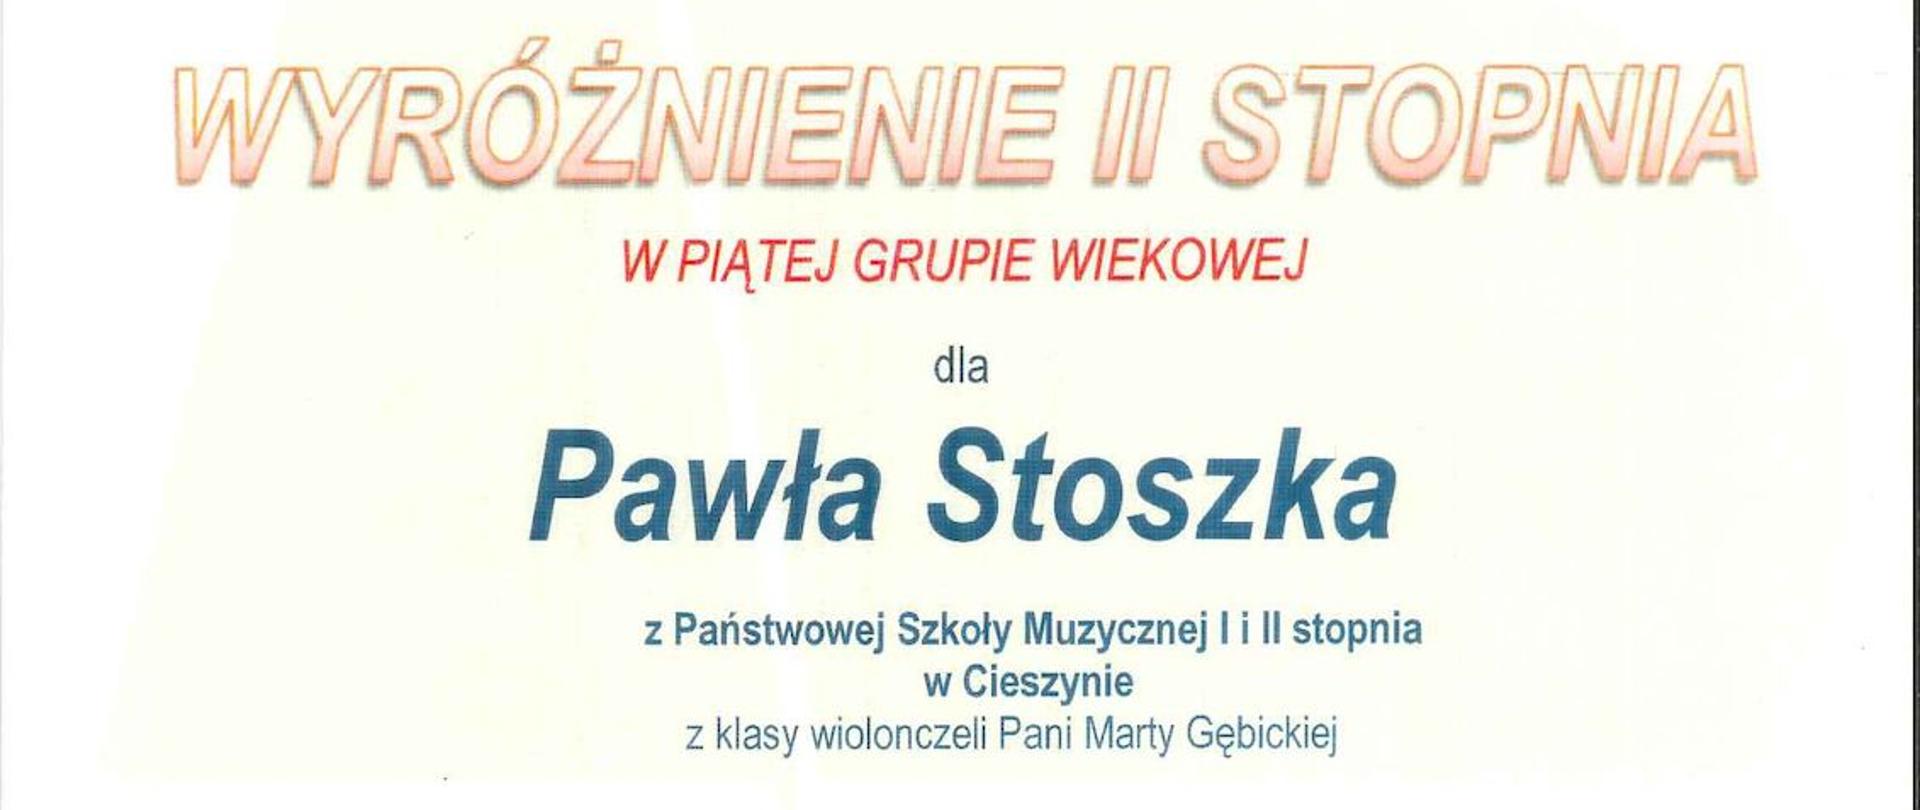 Dyplom dla Pawła Stoszka